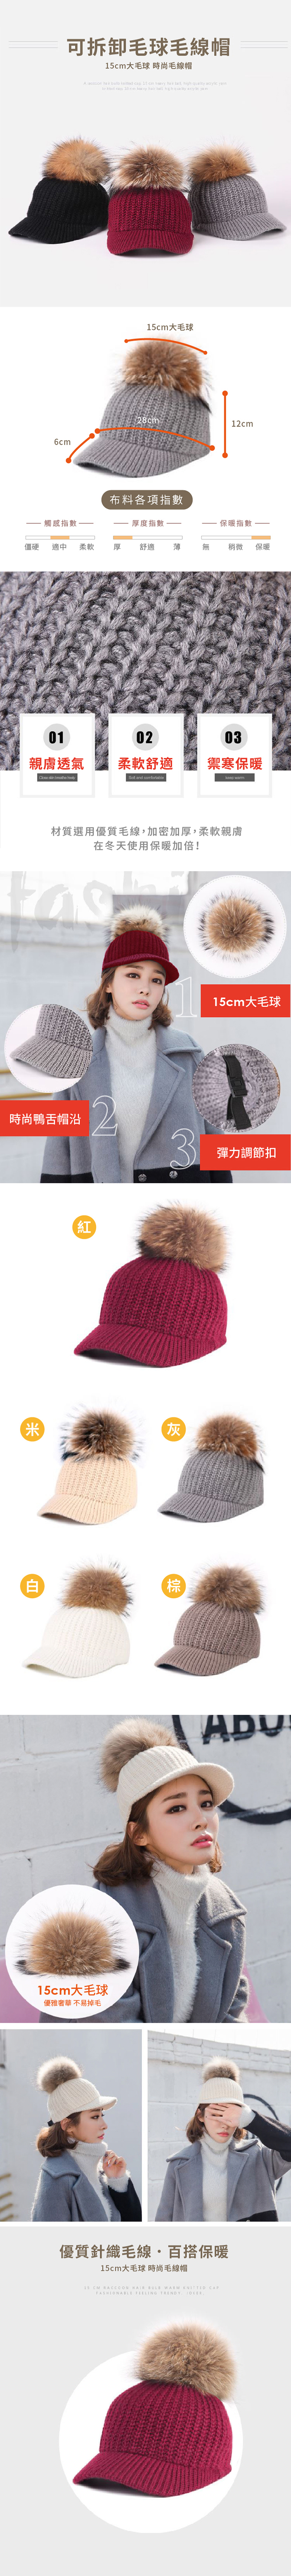 可拆毛球毛線帽 DL時尚媽咪保暖帽 柔軟 毛線帽 毛球可拆 針織帽【JD0067】